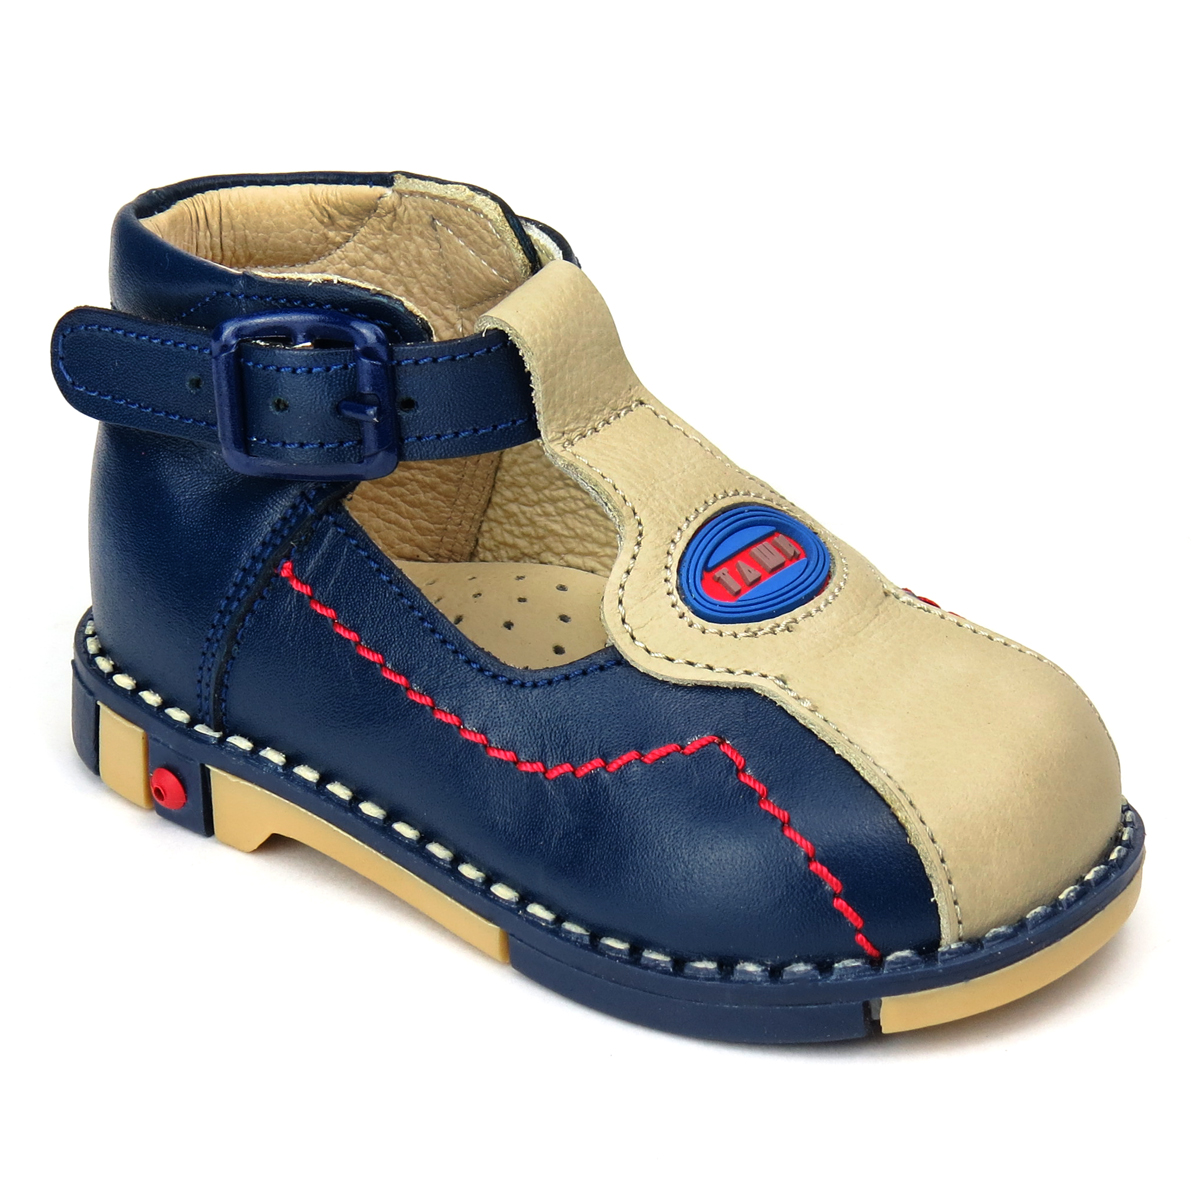 Туфли для мальчика Таши Орто, цвет: темно-синий, светло-бежевый. 219-01. Размер 22